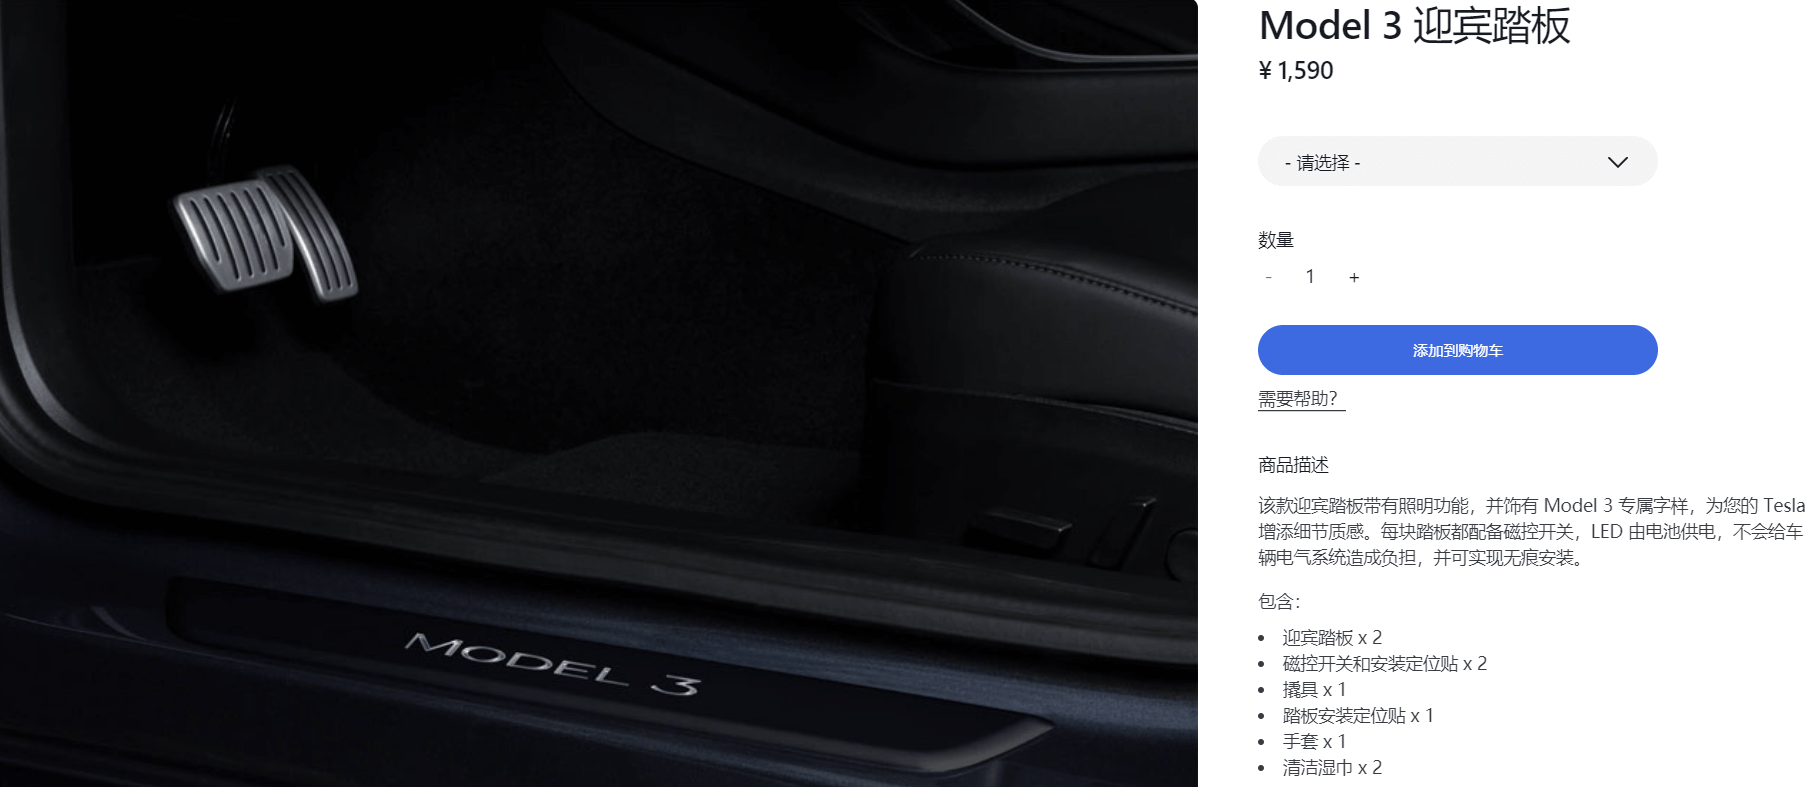 特斯拉上线Model 3发光迎宾踏板 售价1590元 - 特斯拉论坛